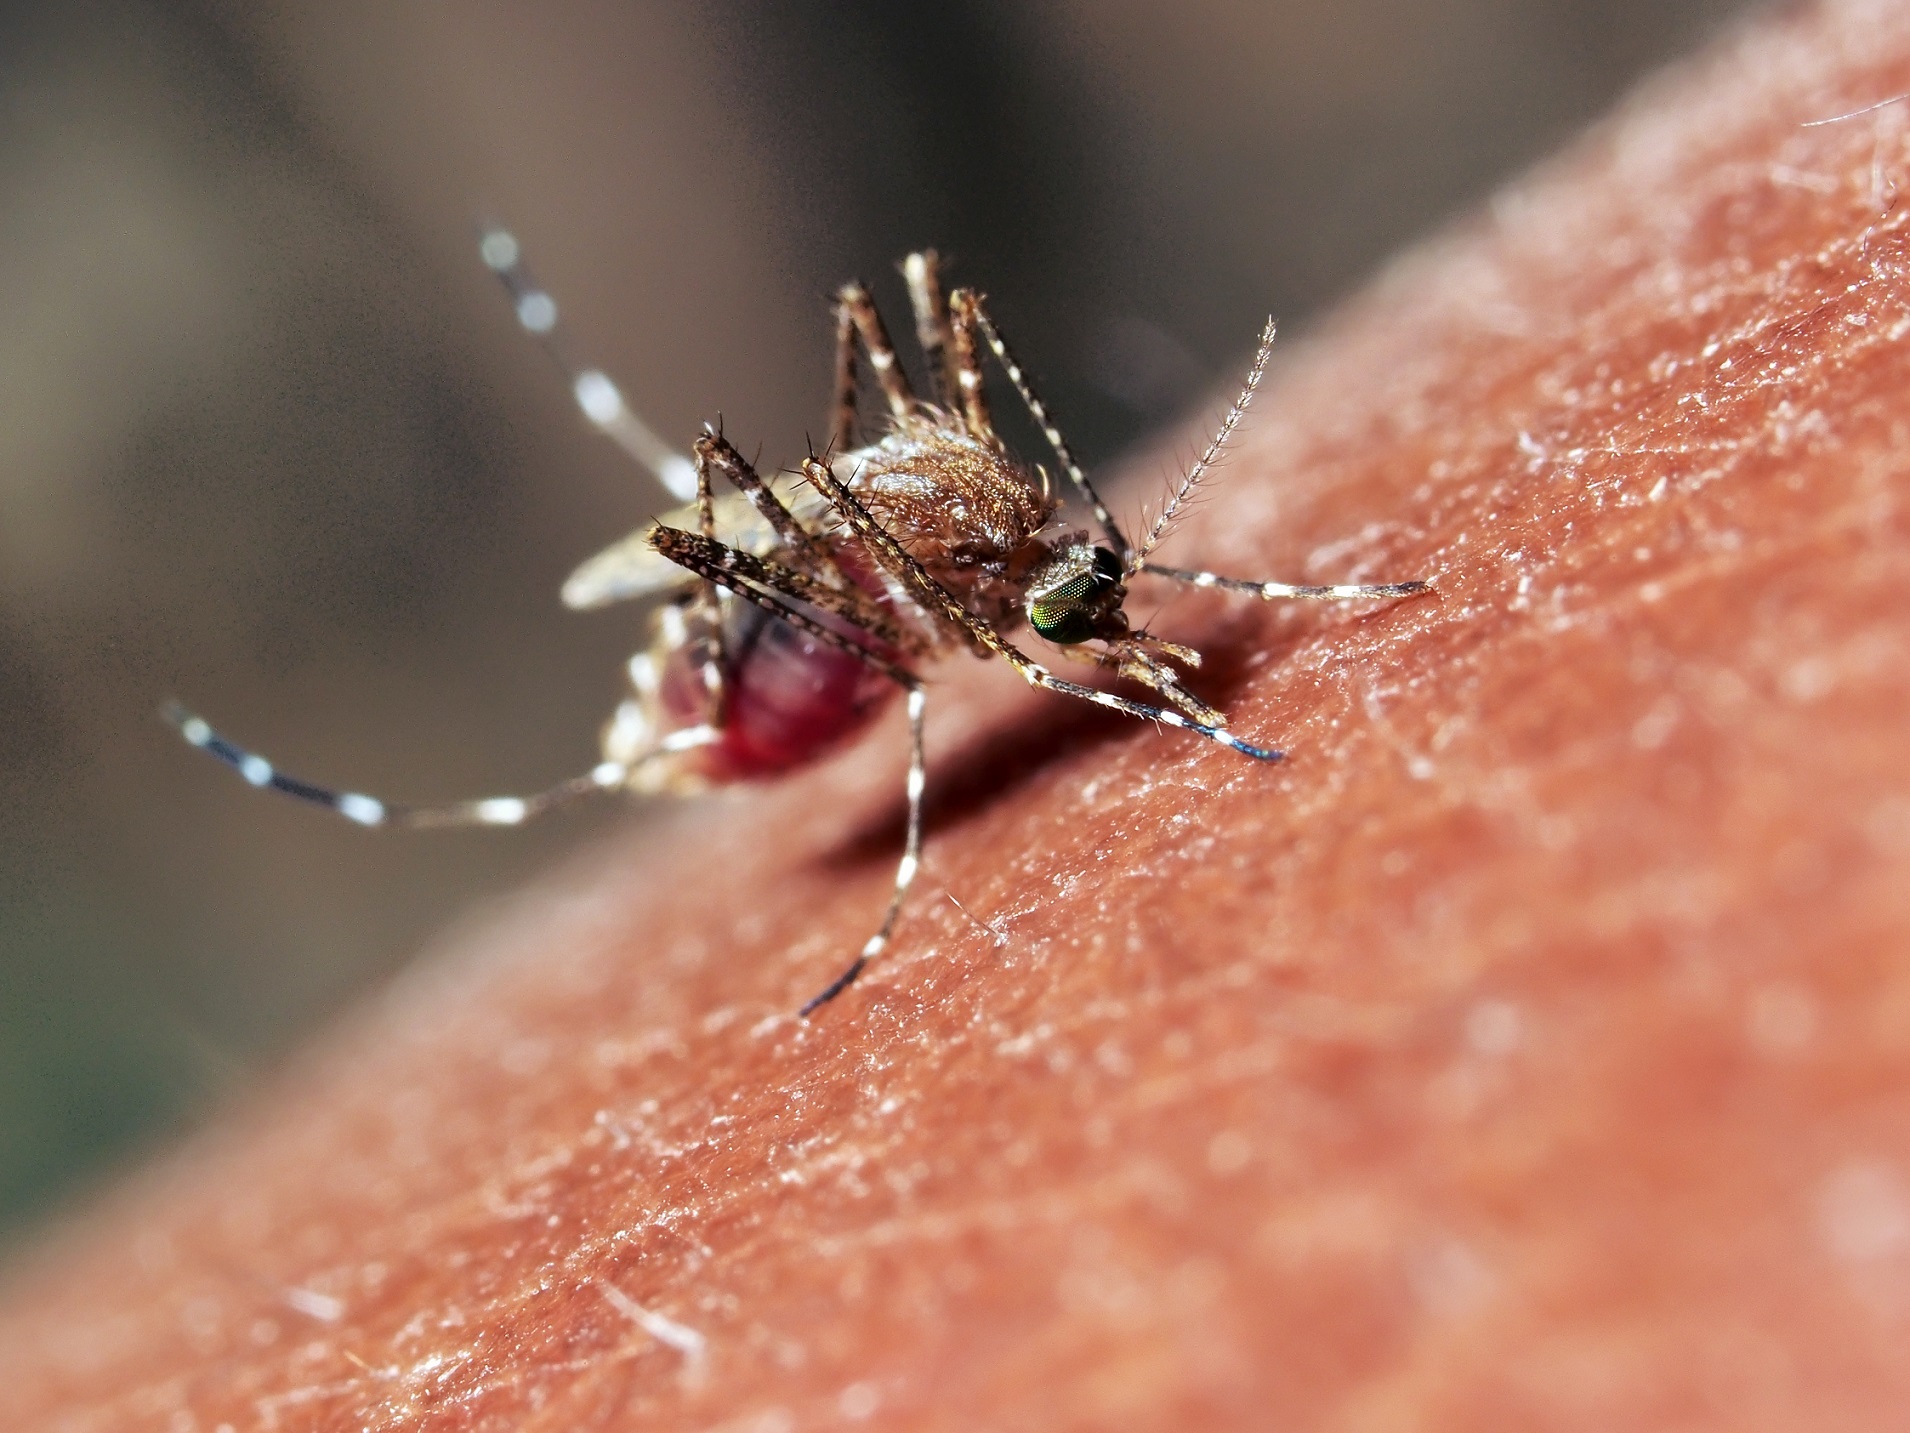 Les arbovirus sont transmis par des arthropodes piqueurs comme les moustiques. © Amir Ridhwan, Shutterstock